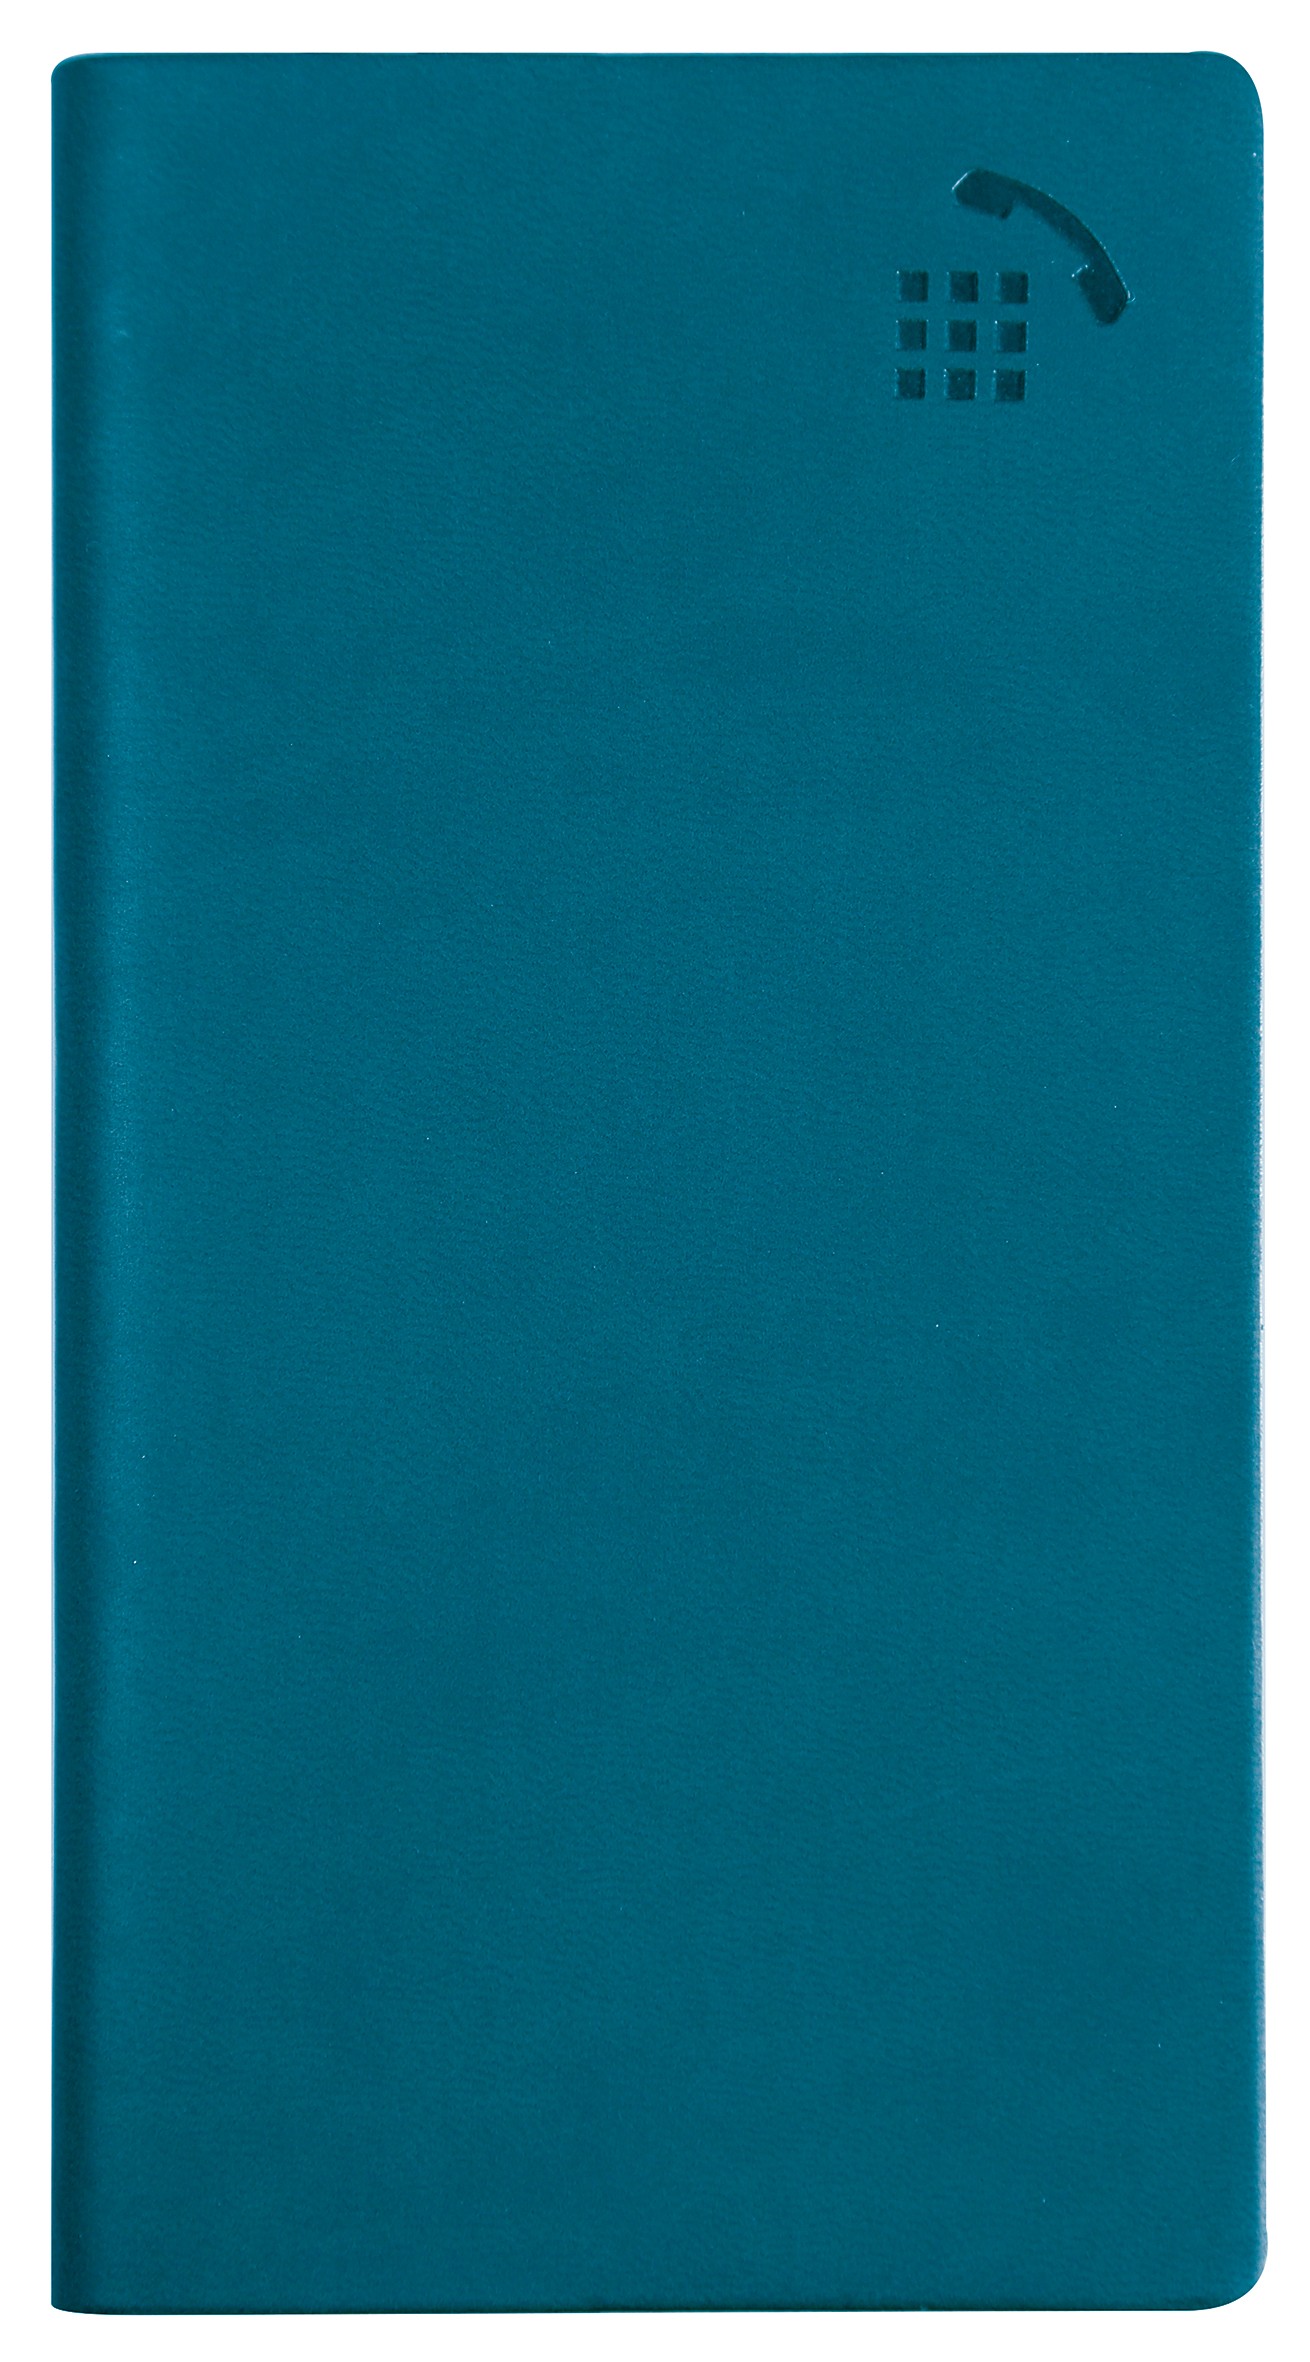 Répertoire Carnet d'adresses Winner - 8,6 x 15,8 cm - disponible dans différentes couleurs - Exacompta